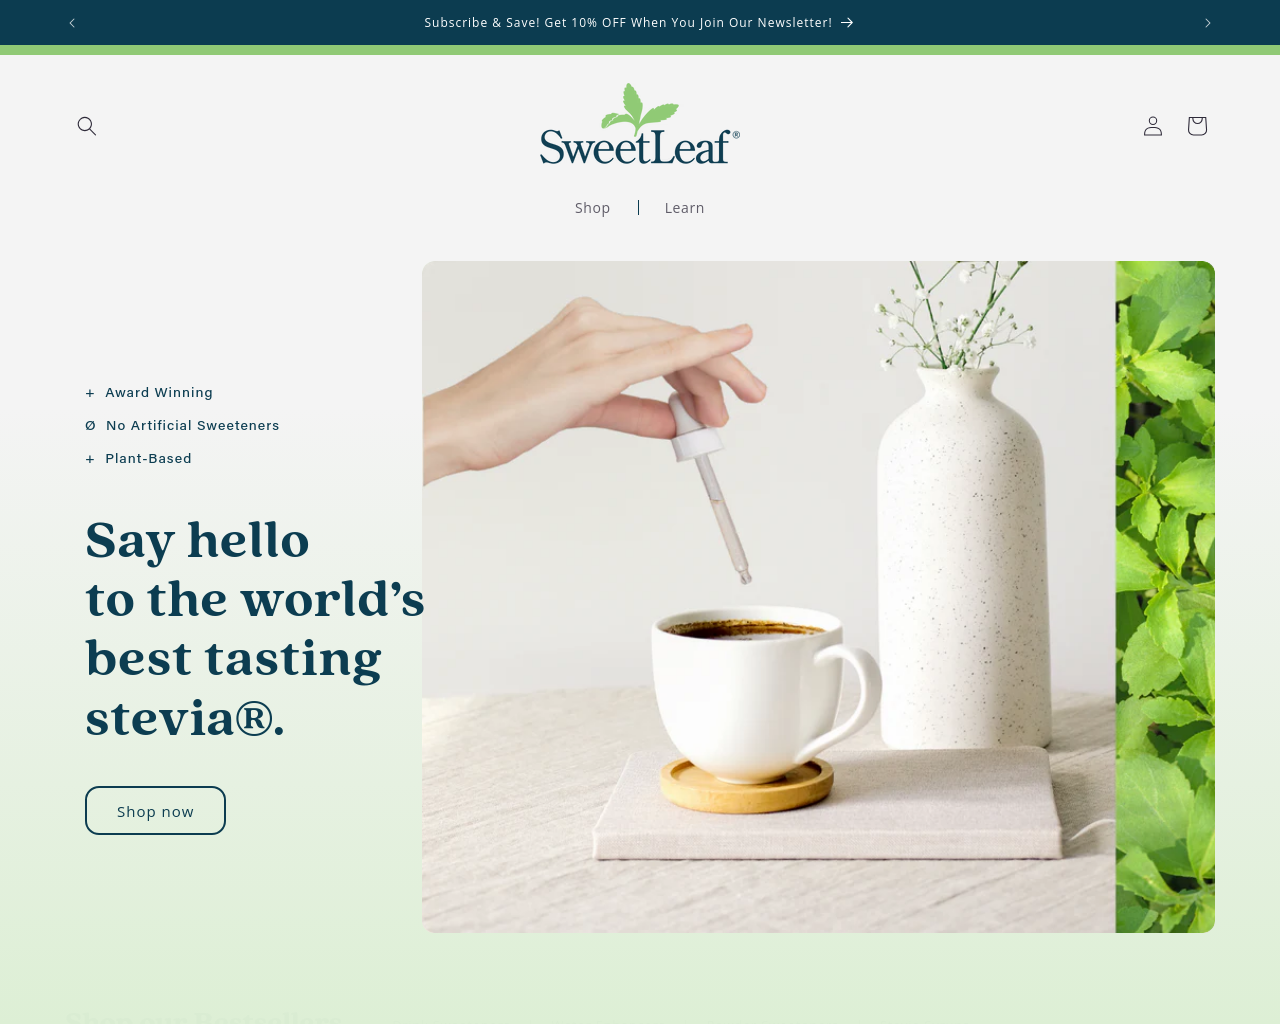 sweetleaf.com